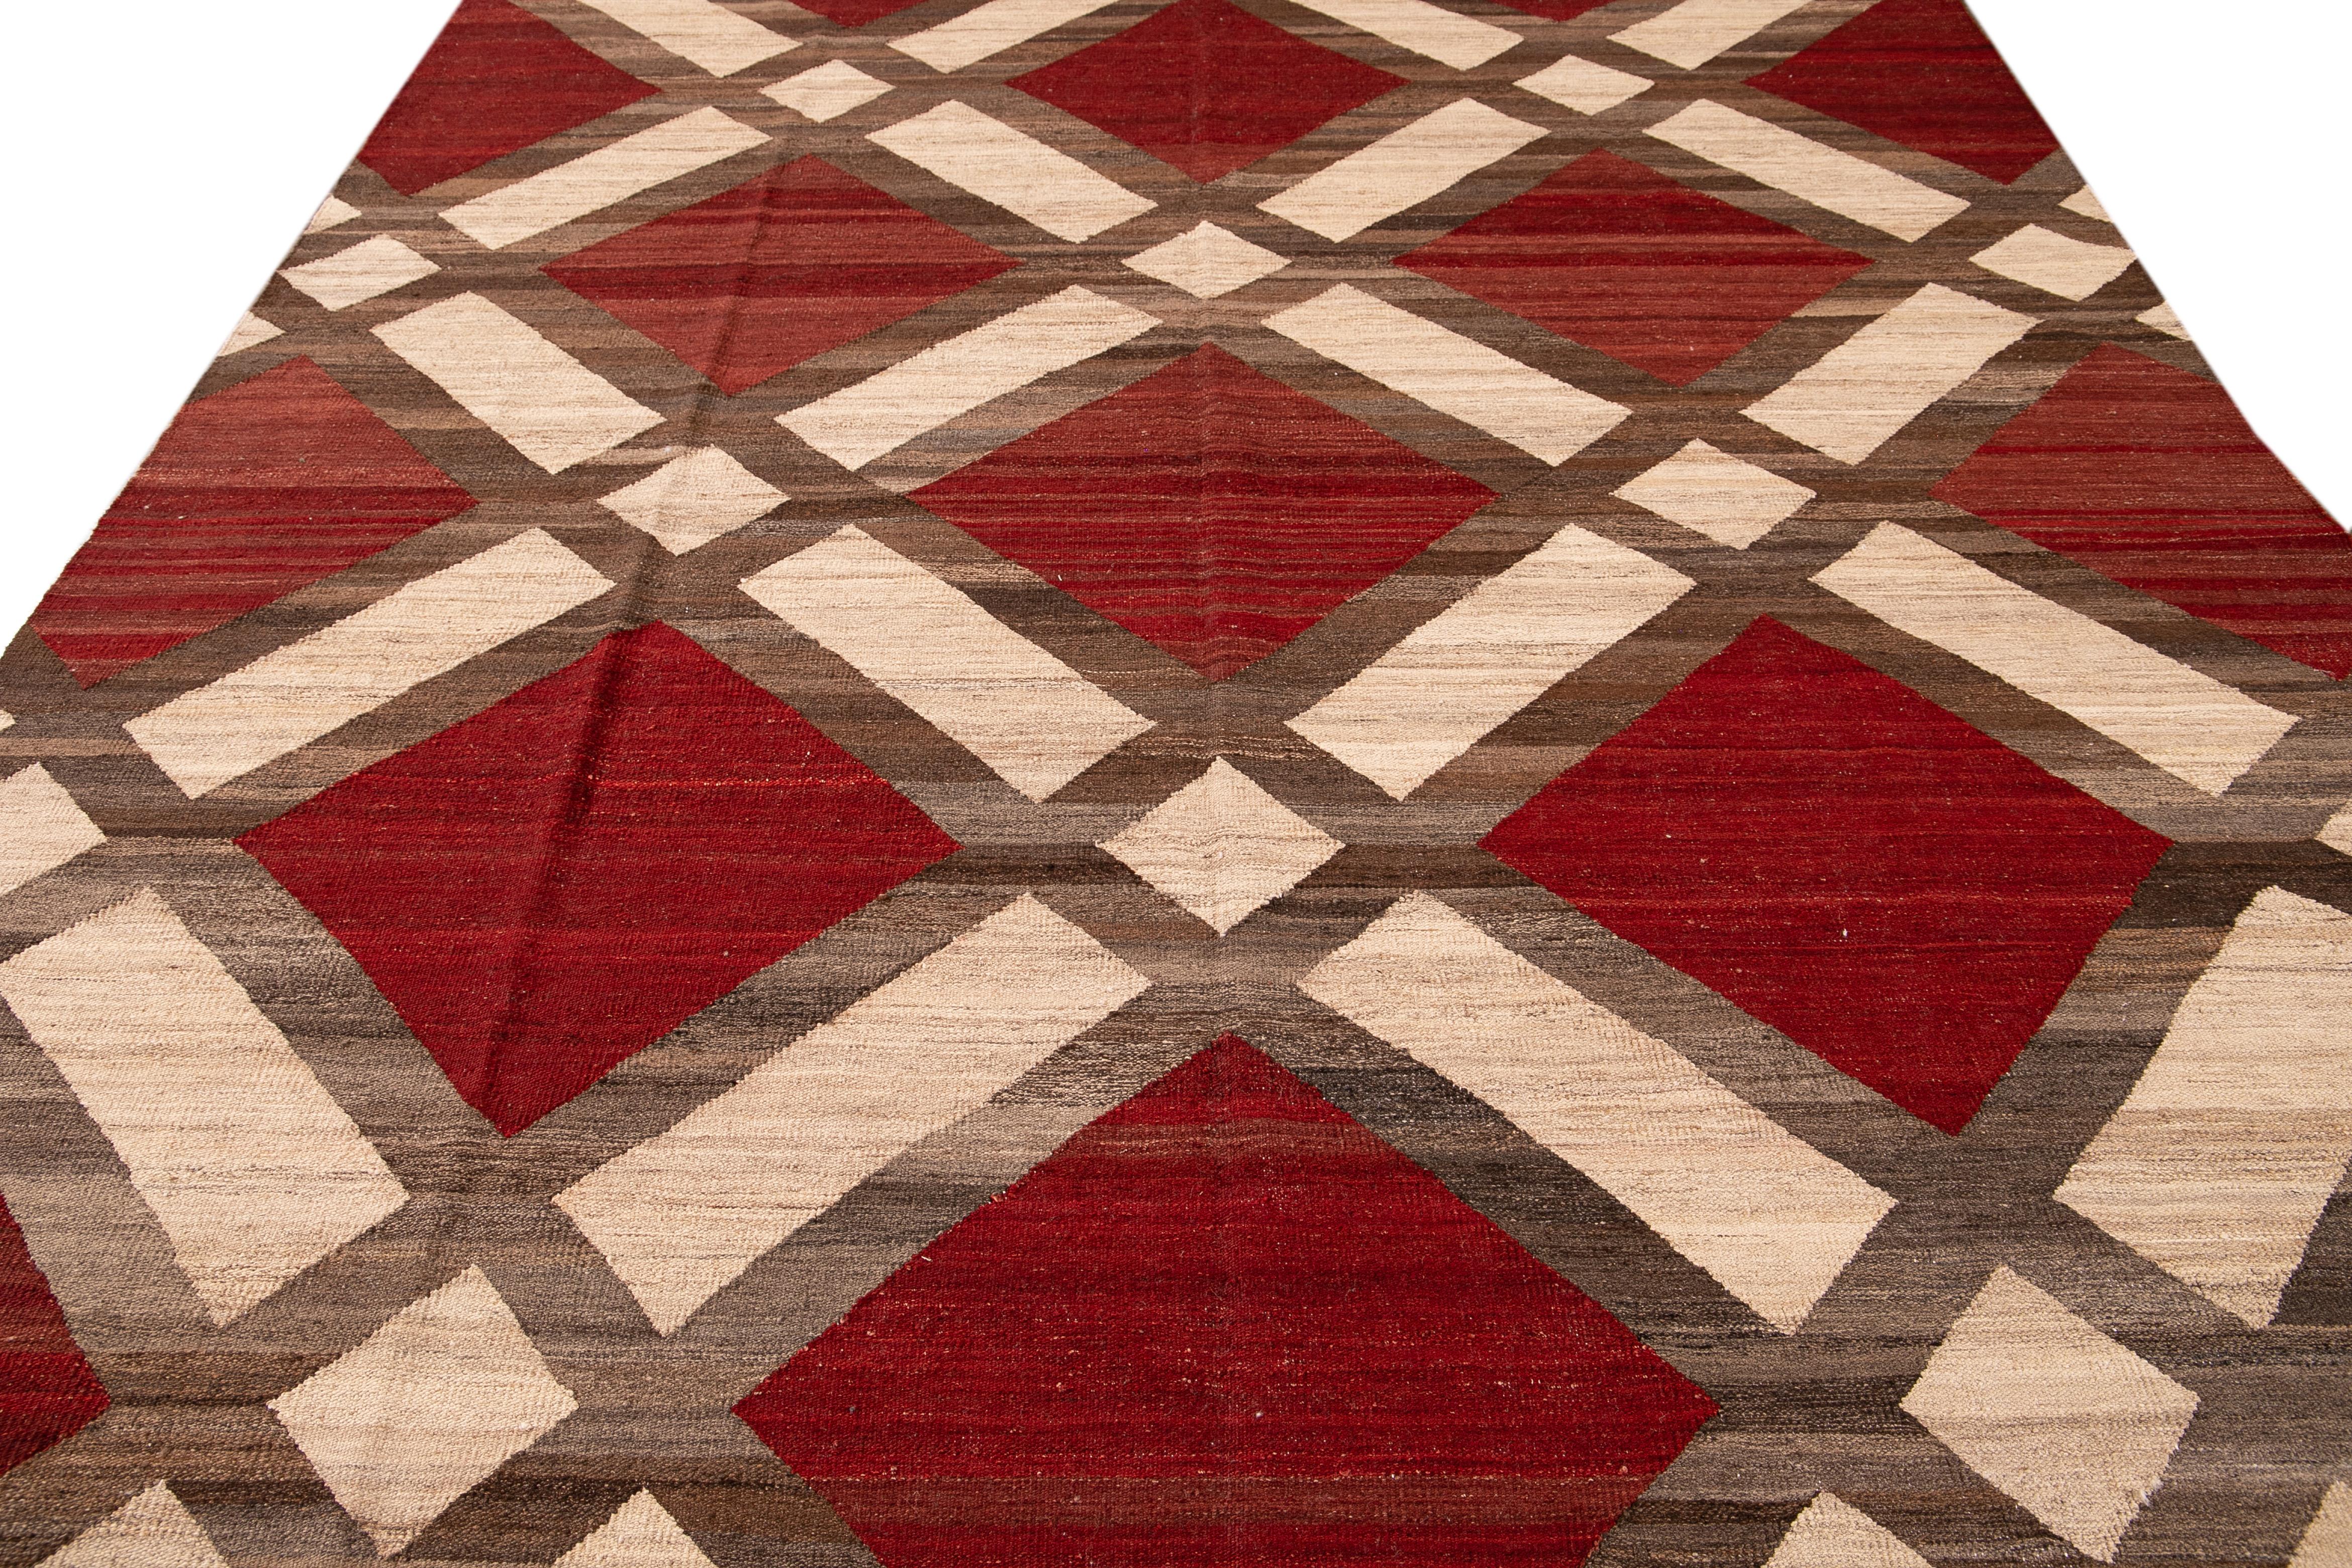 Afghan Modern Kilim Flatweave Red and Beige Geometric Wool Rug For Sale